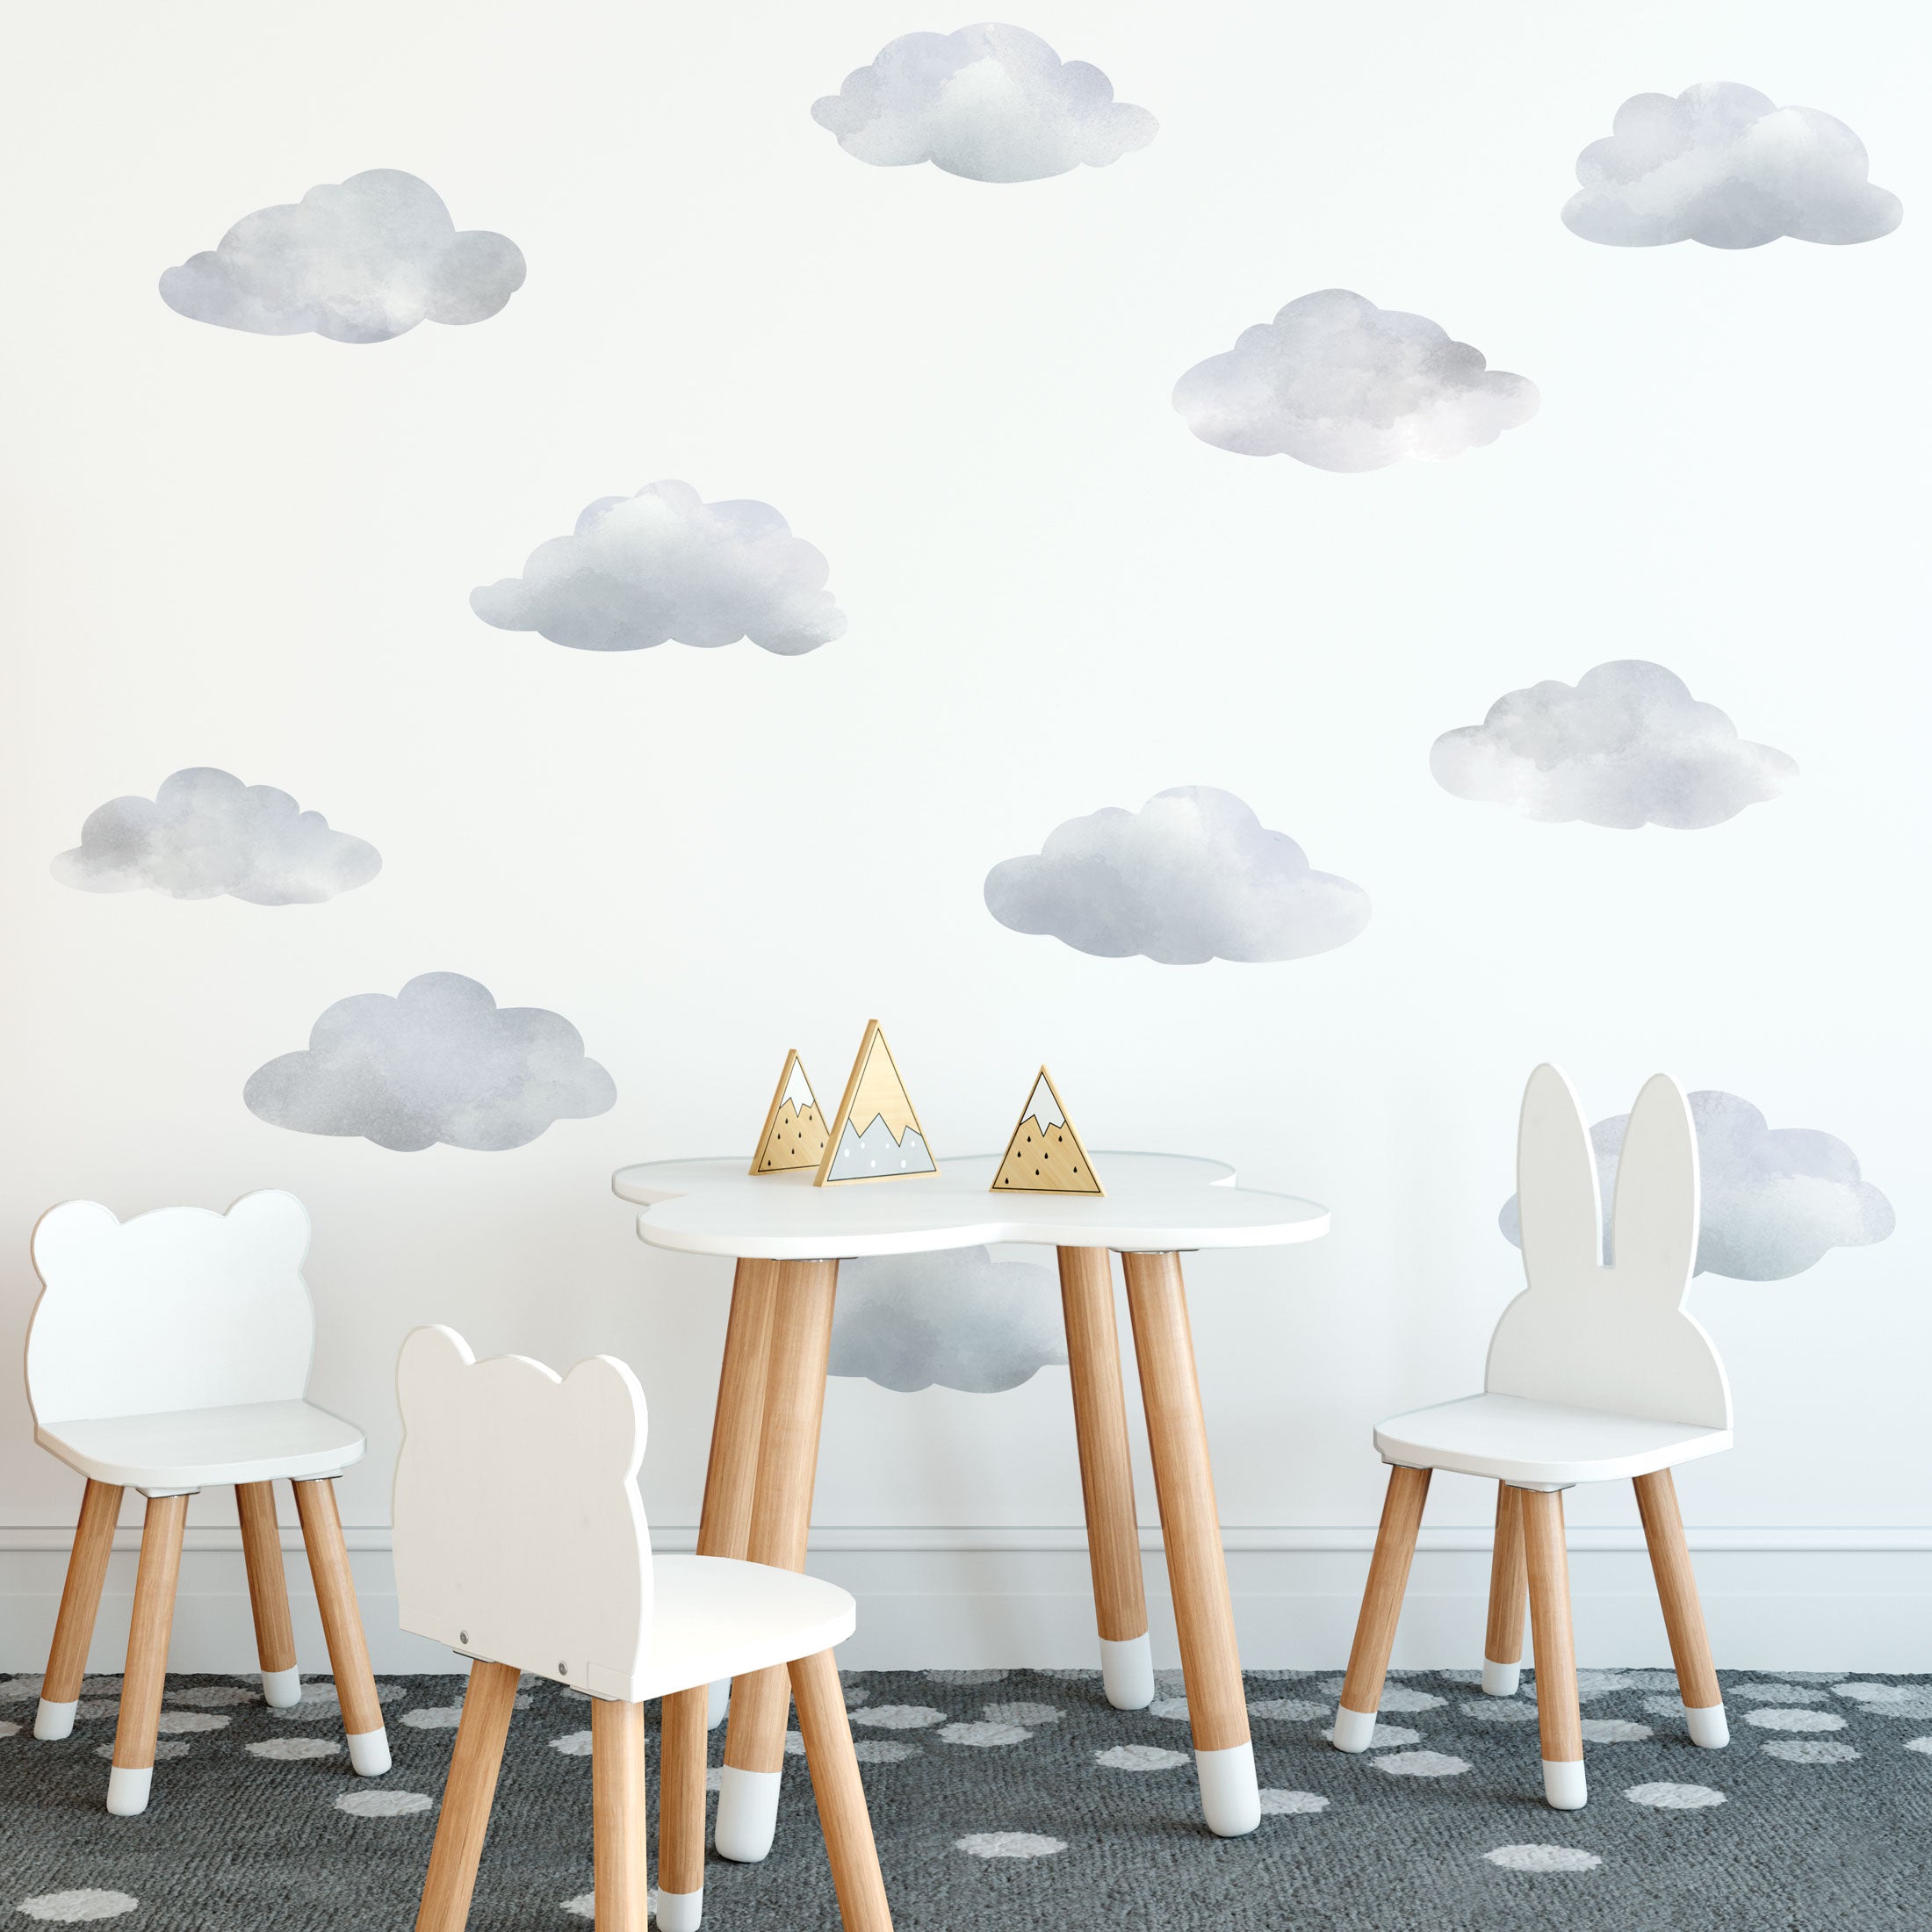 cloud wall art nursery